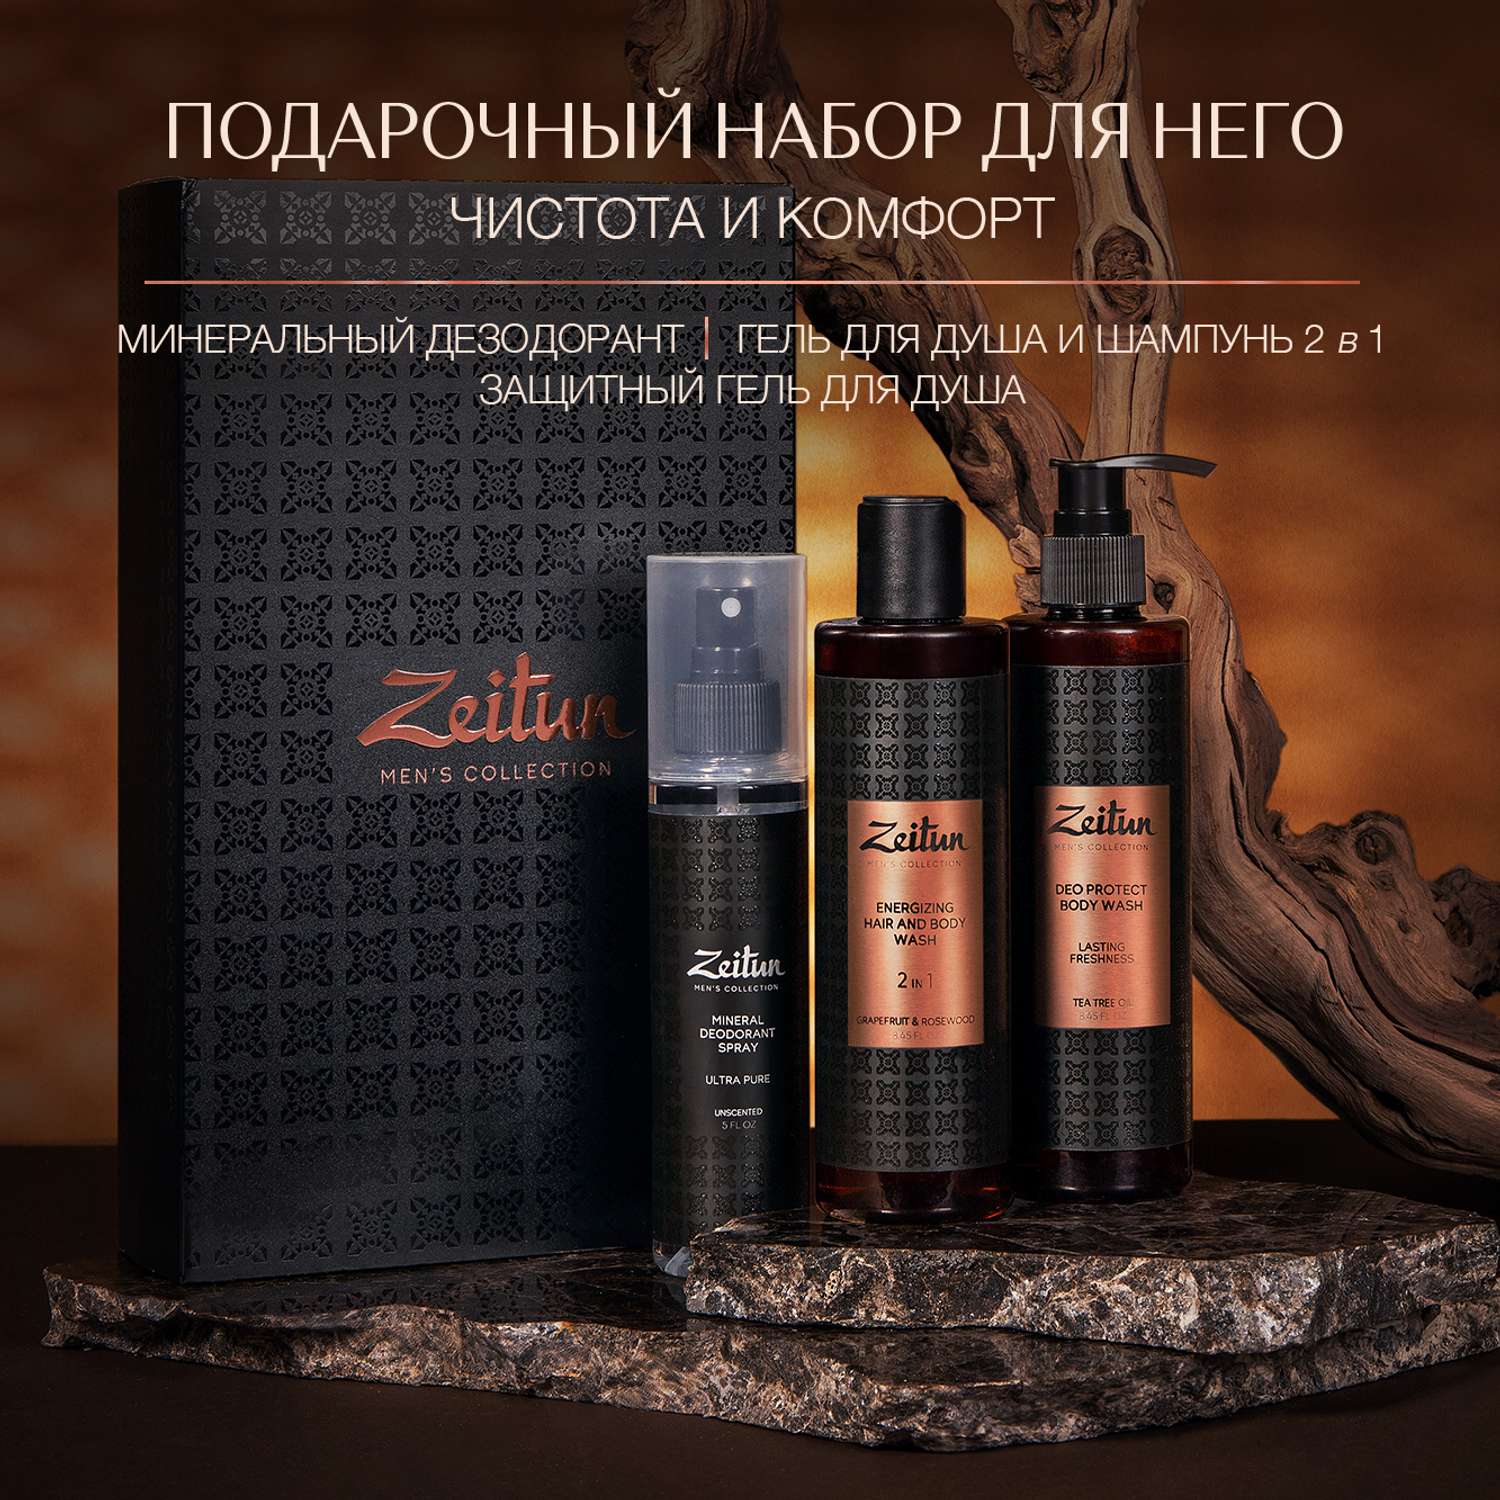 Подарочный набор Zeitun для мужчин Чистота и комфорт гель шампунь и дезодорант - фото 7